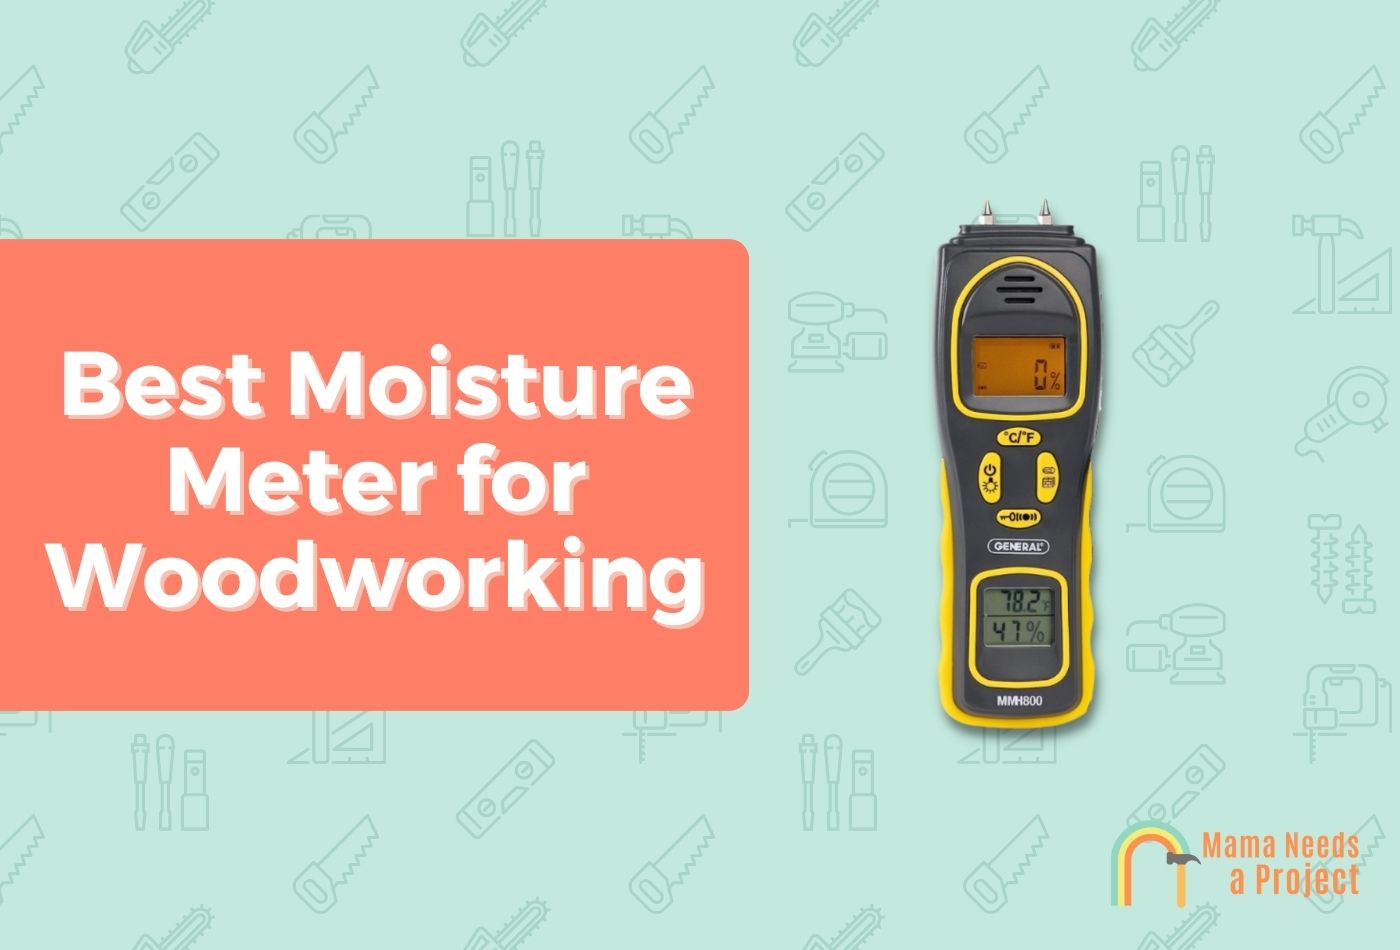 Best Moisture Meter for Woodworking